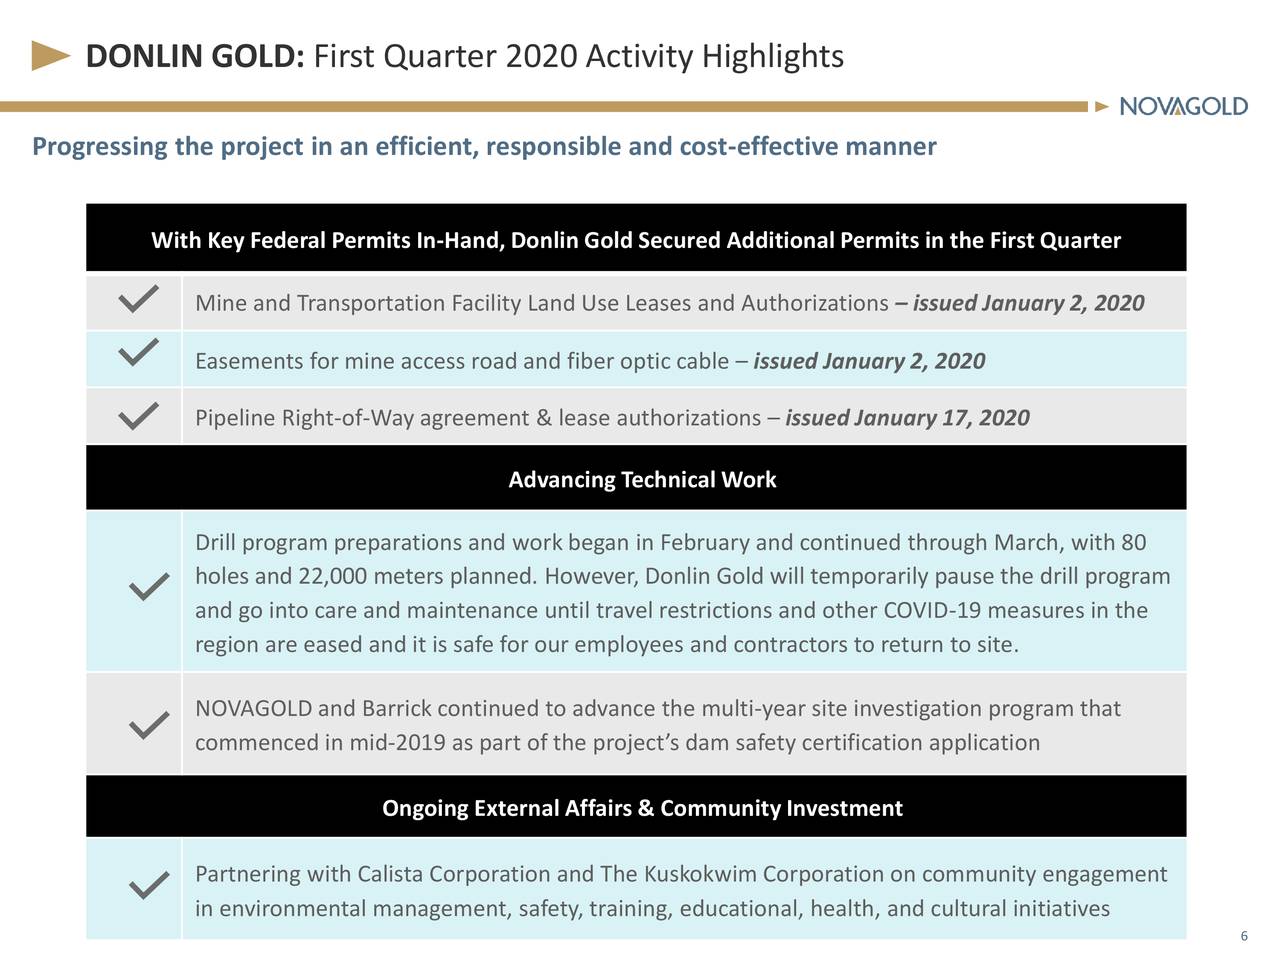 DONLIN GOLD: First Quarter 2020 Activity Highlights